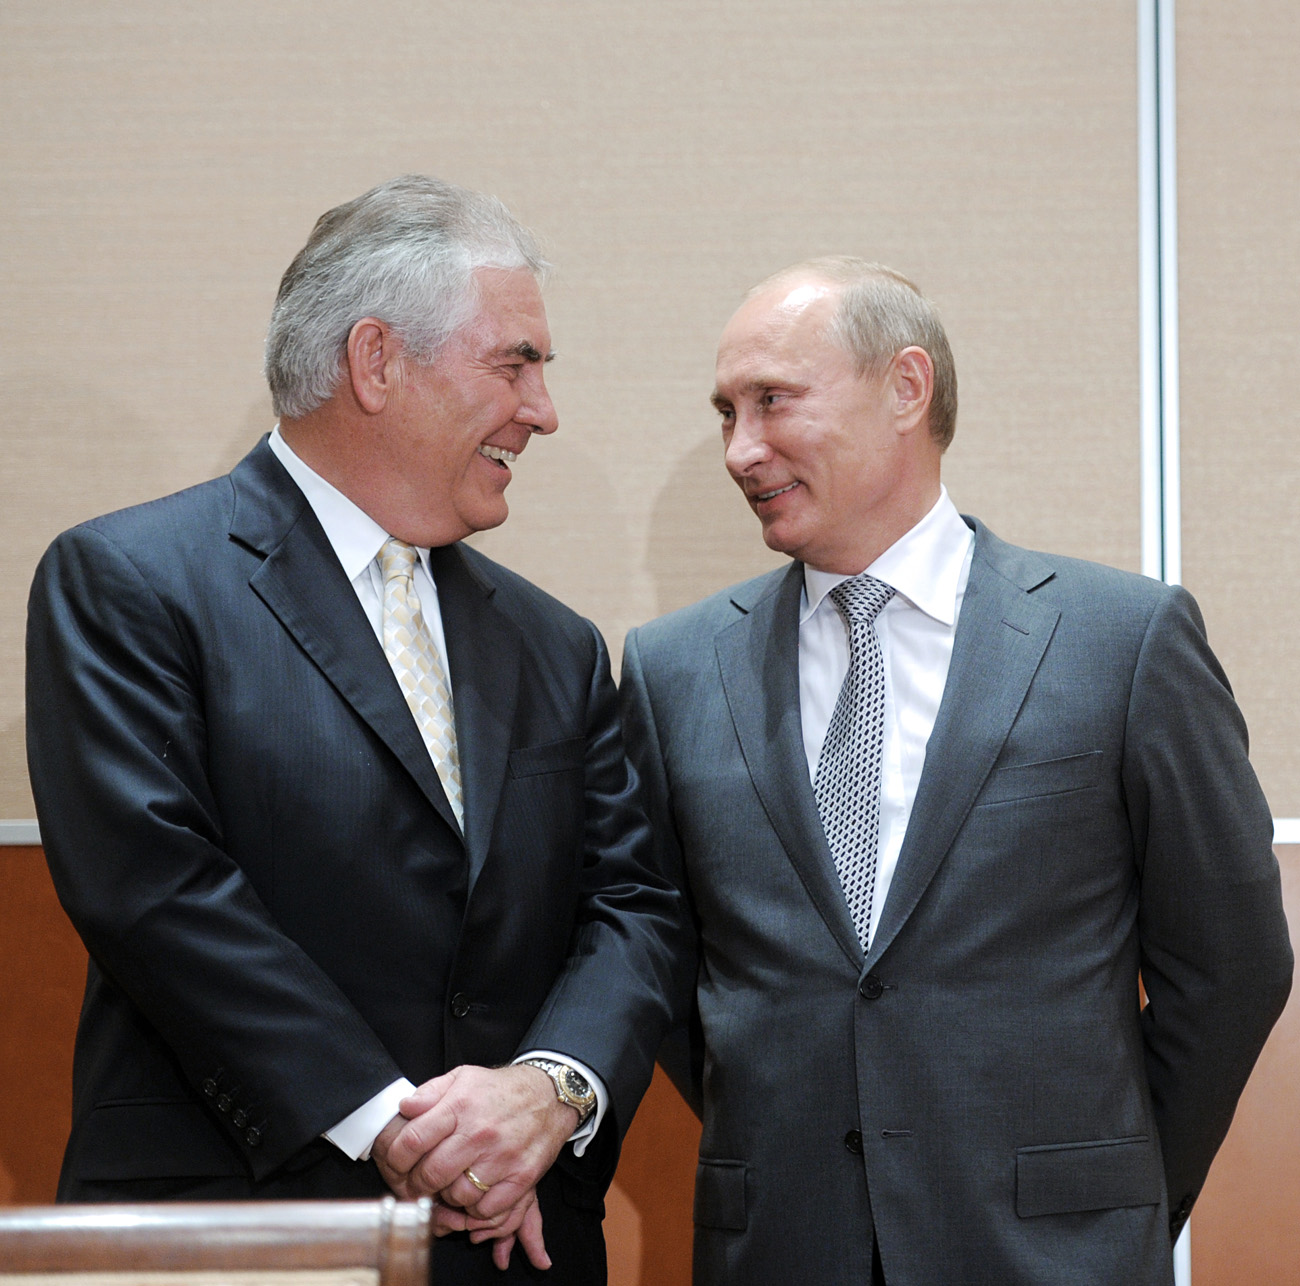 Predsednik in generalni direktor družbe ExxonMobil Rex Tillerson ter ruski premier Vladimir Putin na slovesnosti ob podpisu dogovora o strateškem sodelovanju med ExxonMobil in Rosneftom, 30. 8. 2011.